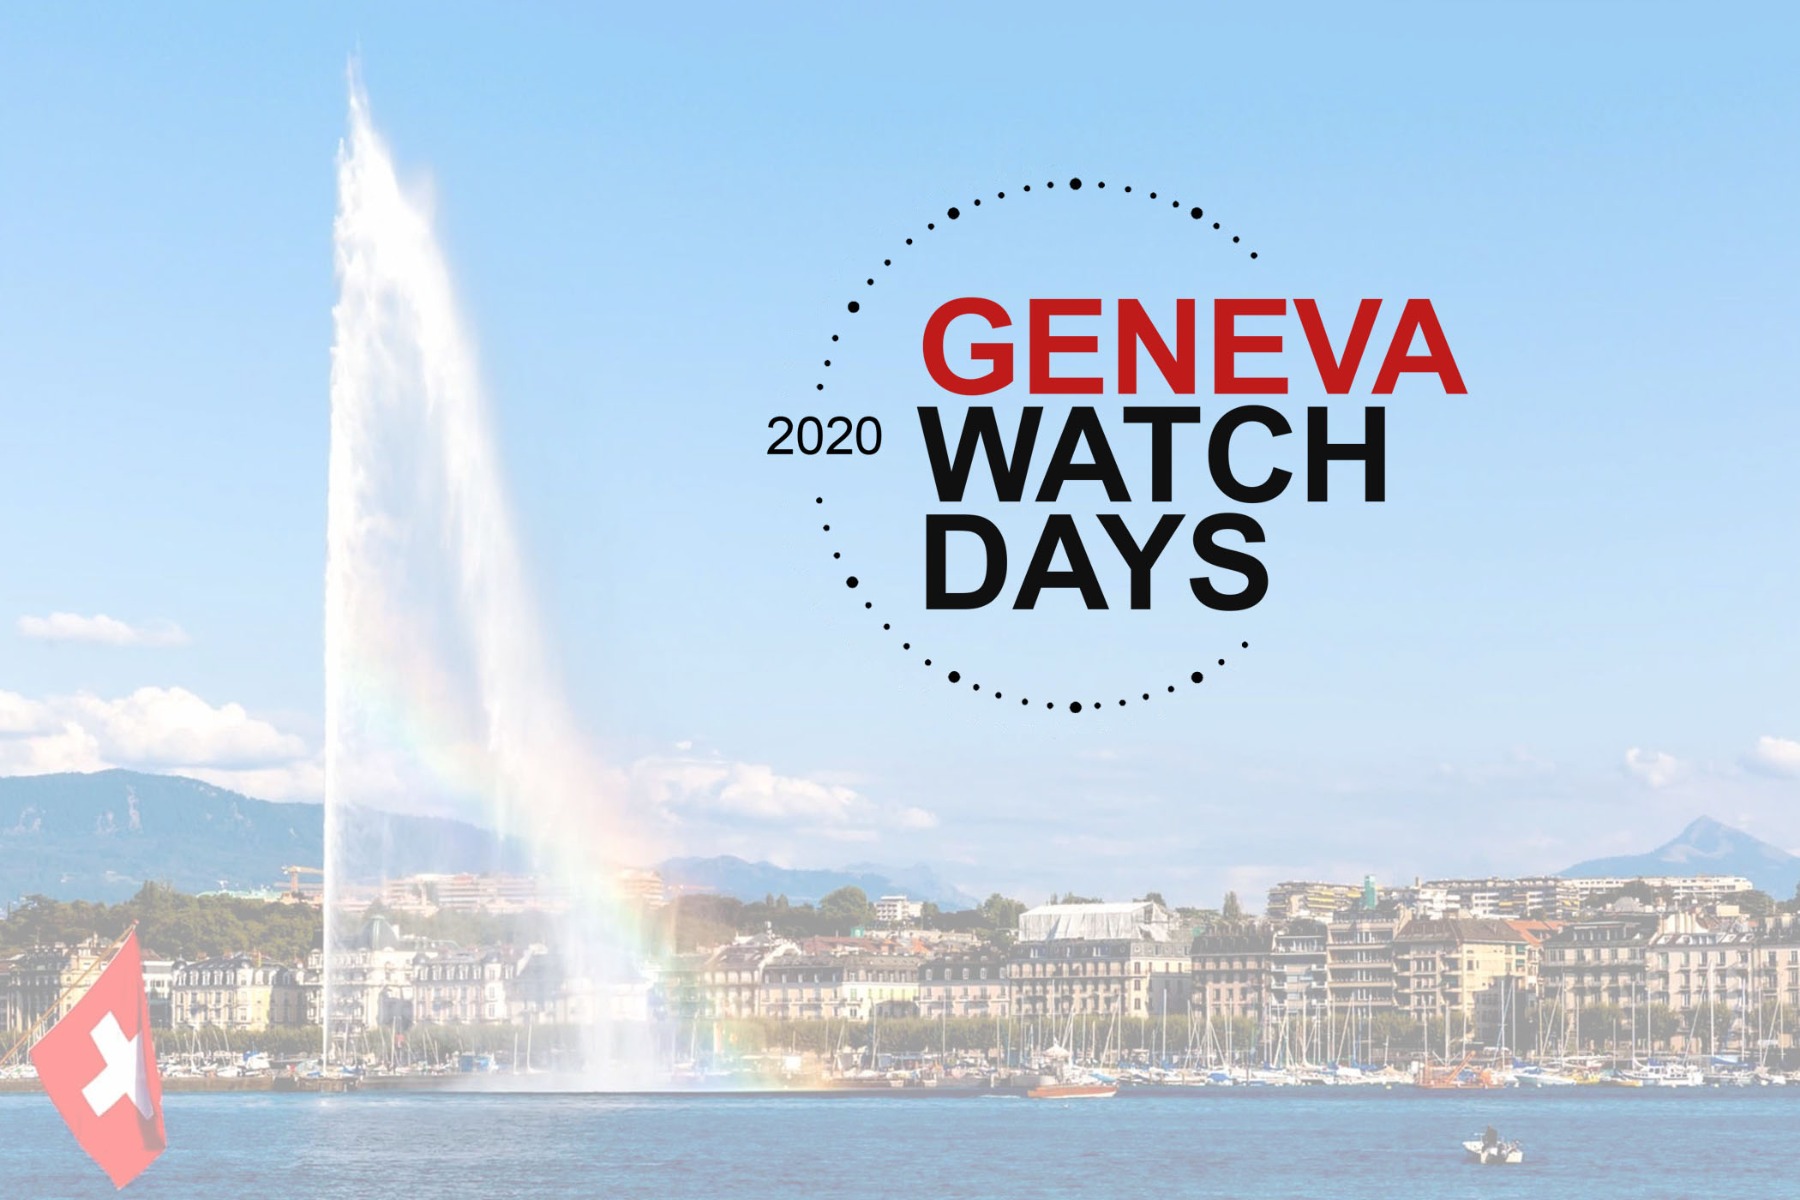 Sự kiện nổi tiếng Geneva Watch Days trở lại tại quê nhà Thụy Sĩ